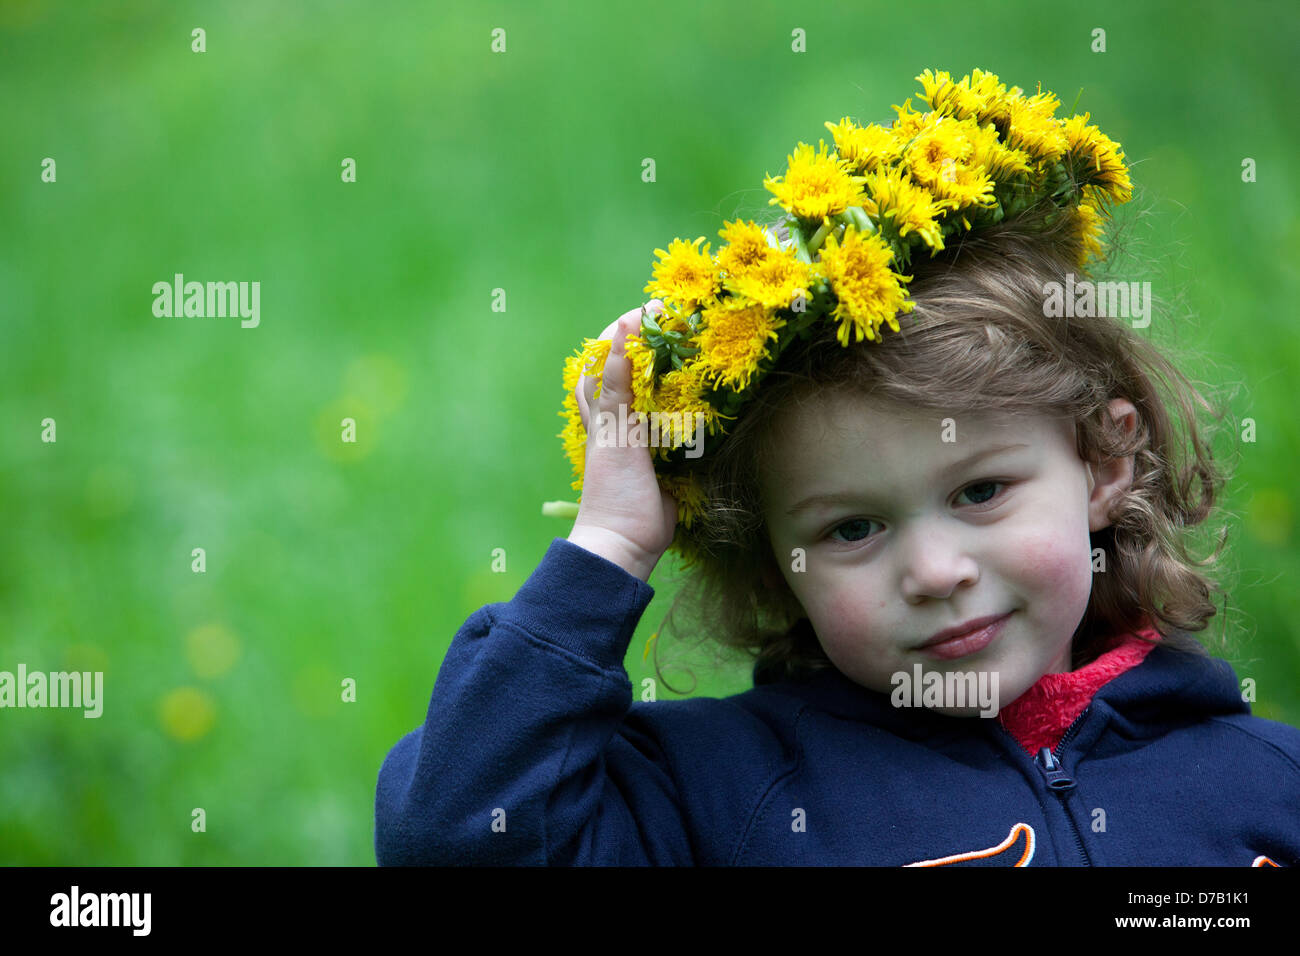 Kleines Mädchen Engel Kleinkind Gesicht Kind mit Löwenzahn Kranz auf Kopf gelbe Kranz Blumen Kind Gesicht Ausdruck Kind kleines Mädchen mit gelben Löwenzahn Stockfoto